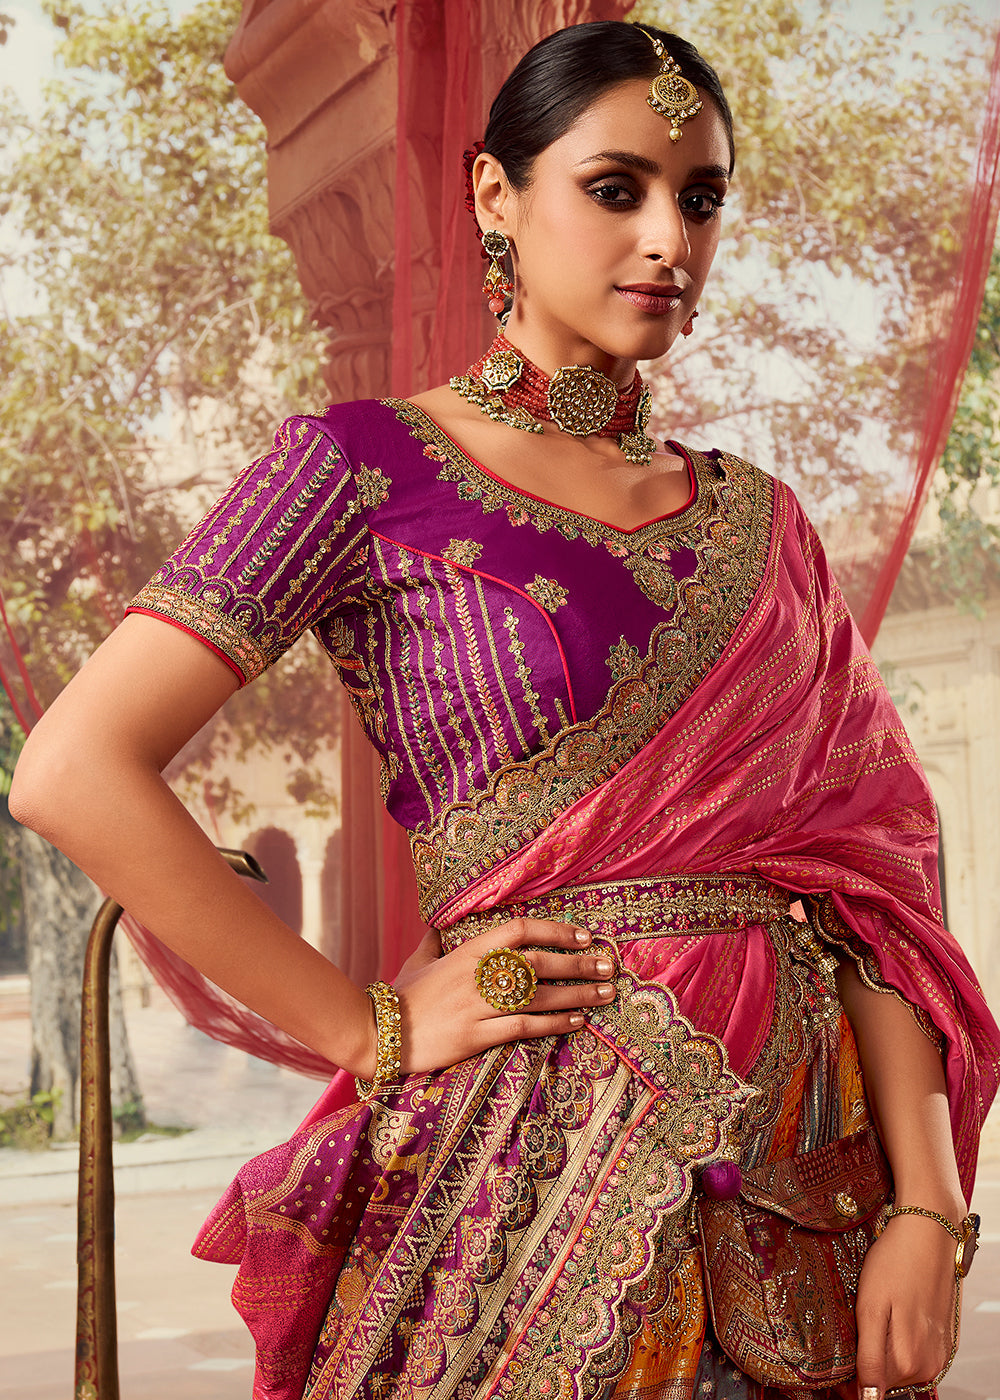 39+ Trending Banarasi Lehenga Designs to Wear in this Wedding Season |  Rajasthani dress, Lehenga designs, Indian bridal dress